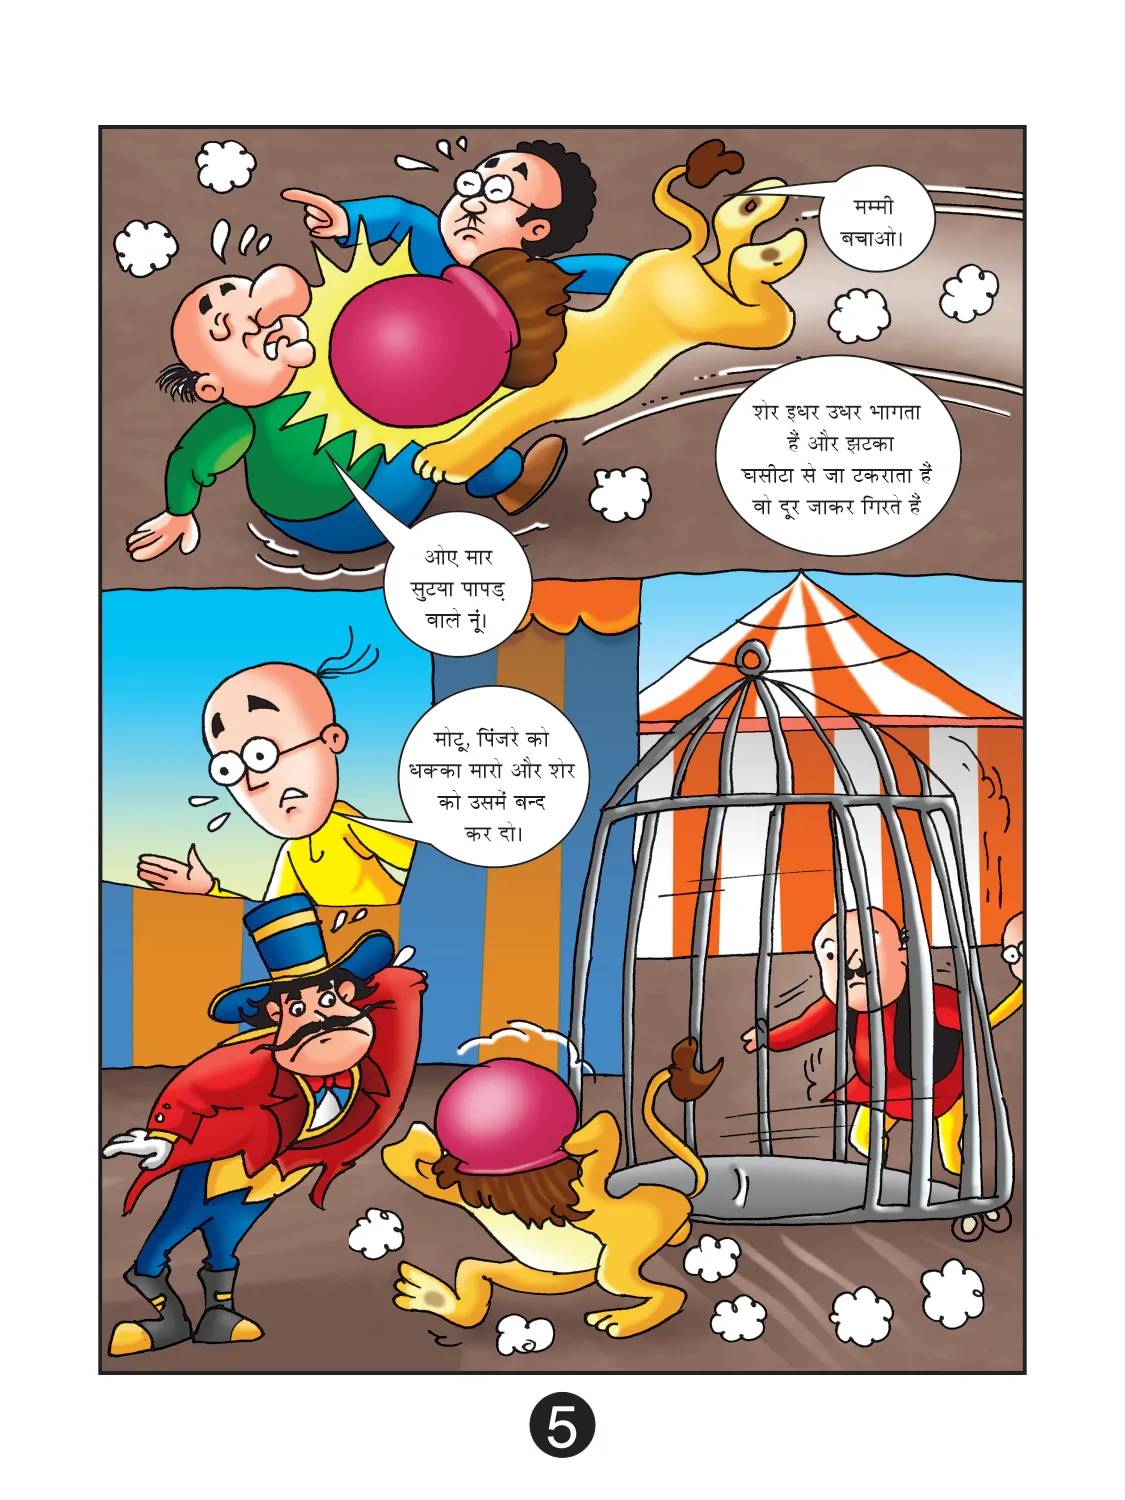 Lotpot E-Comics cartoon character motu patlu